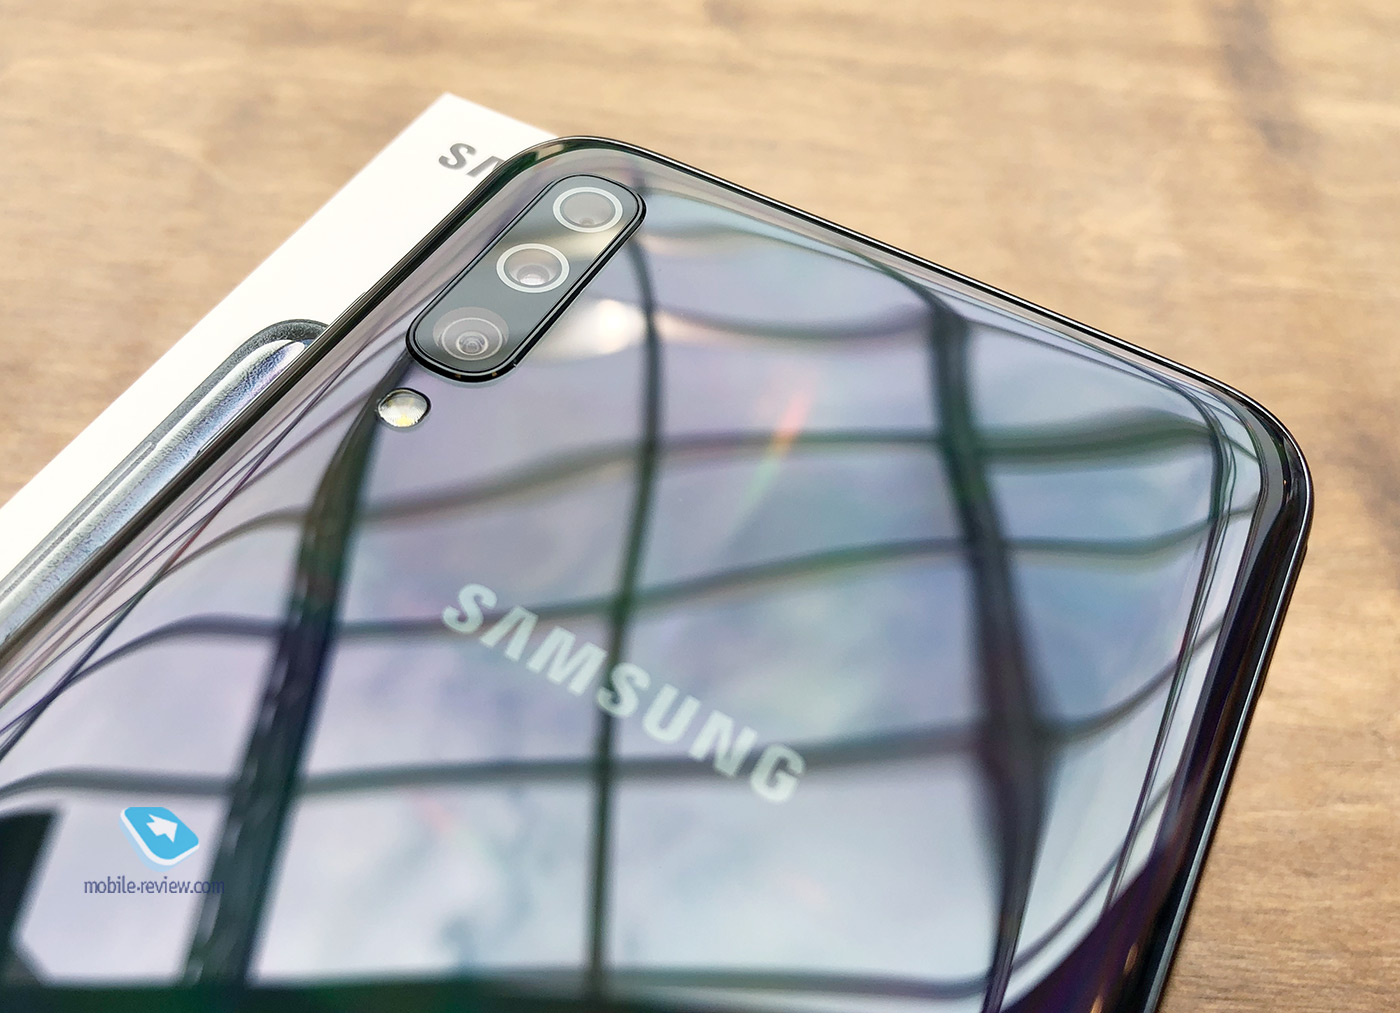 Десять причин купить Samsung Galaxy A70